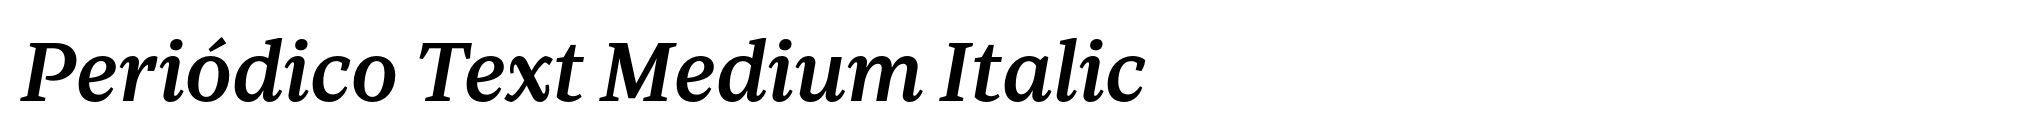 Periódico Text Medium Italic image